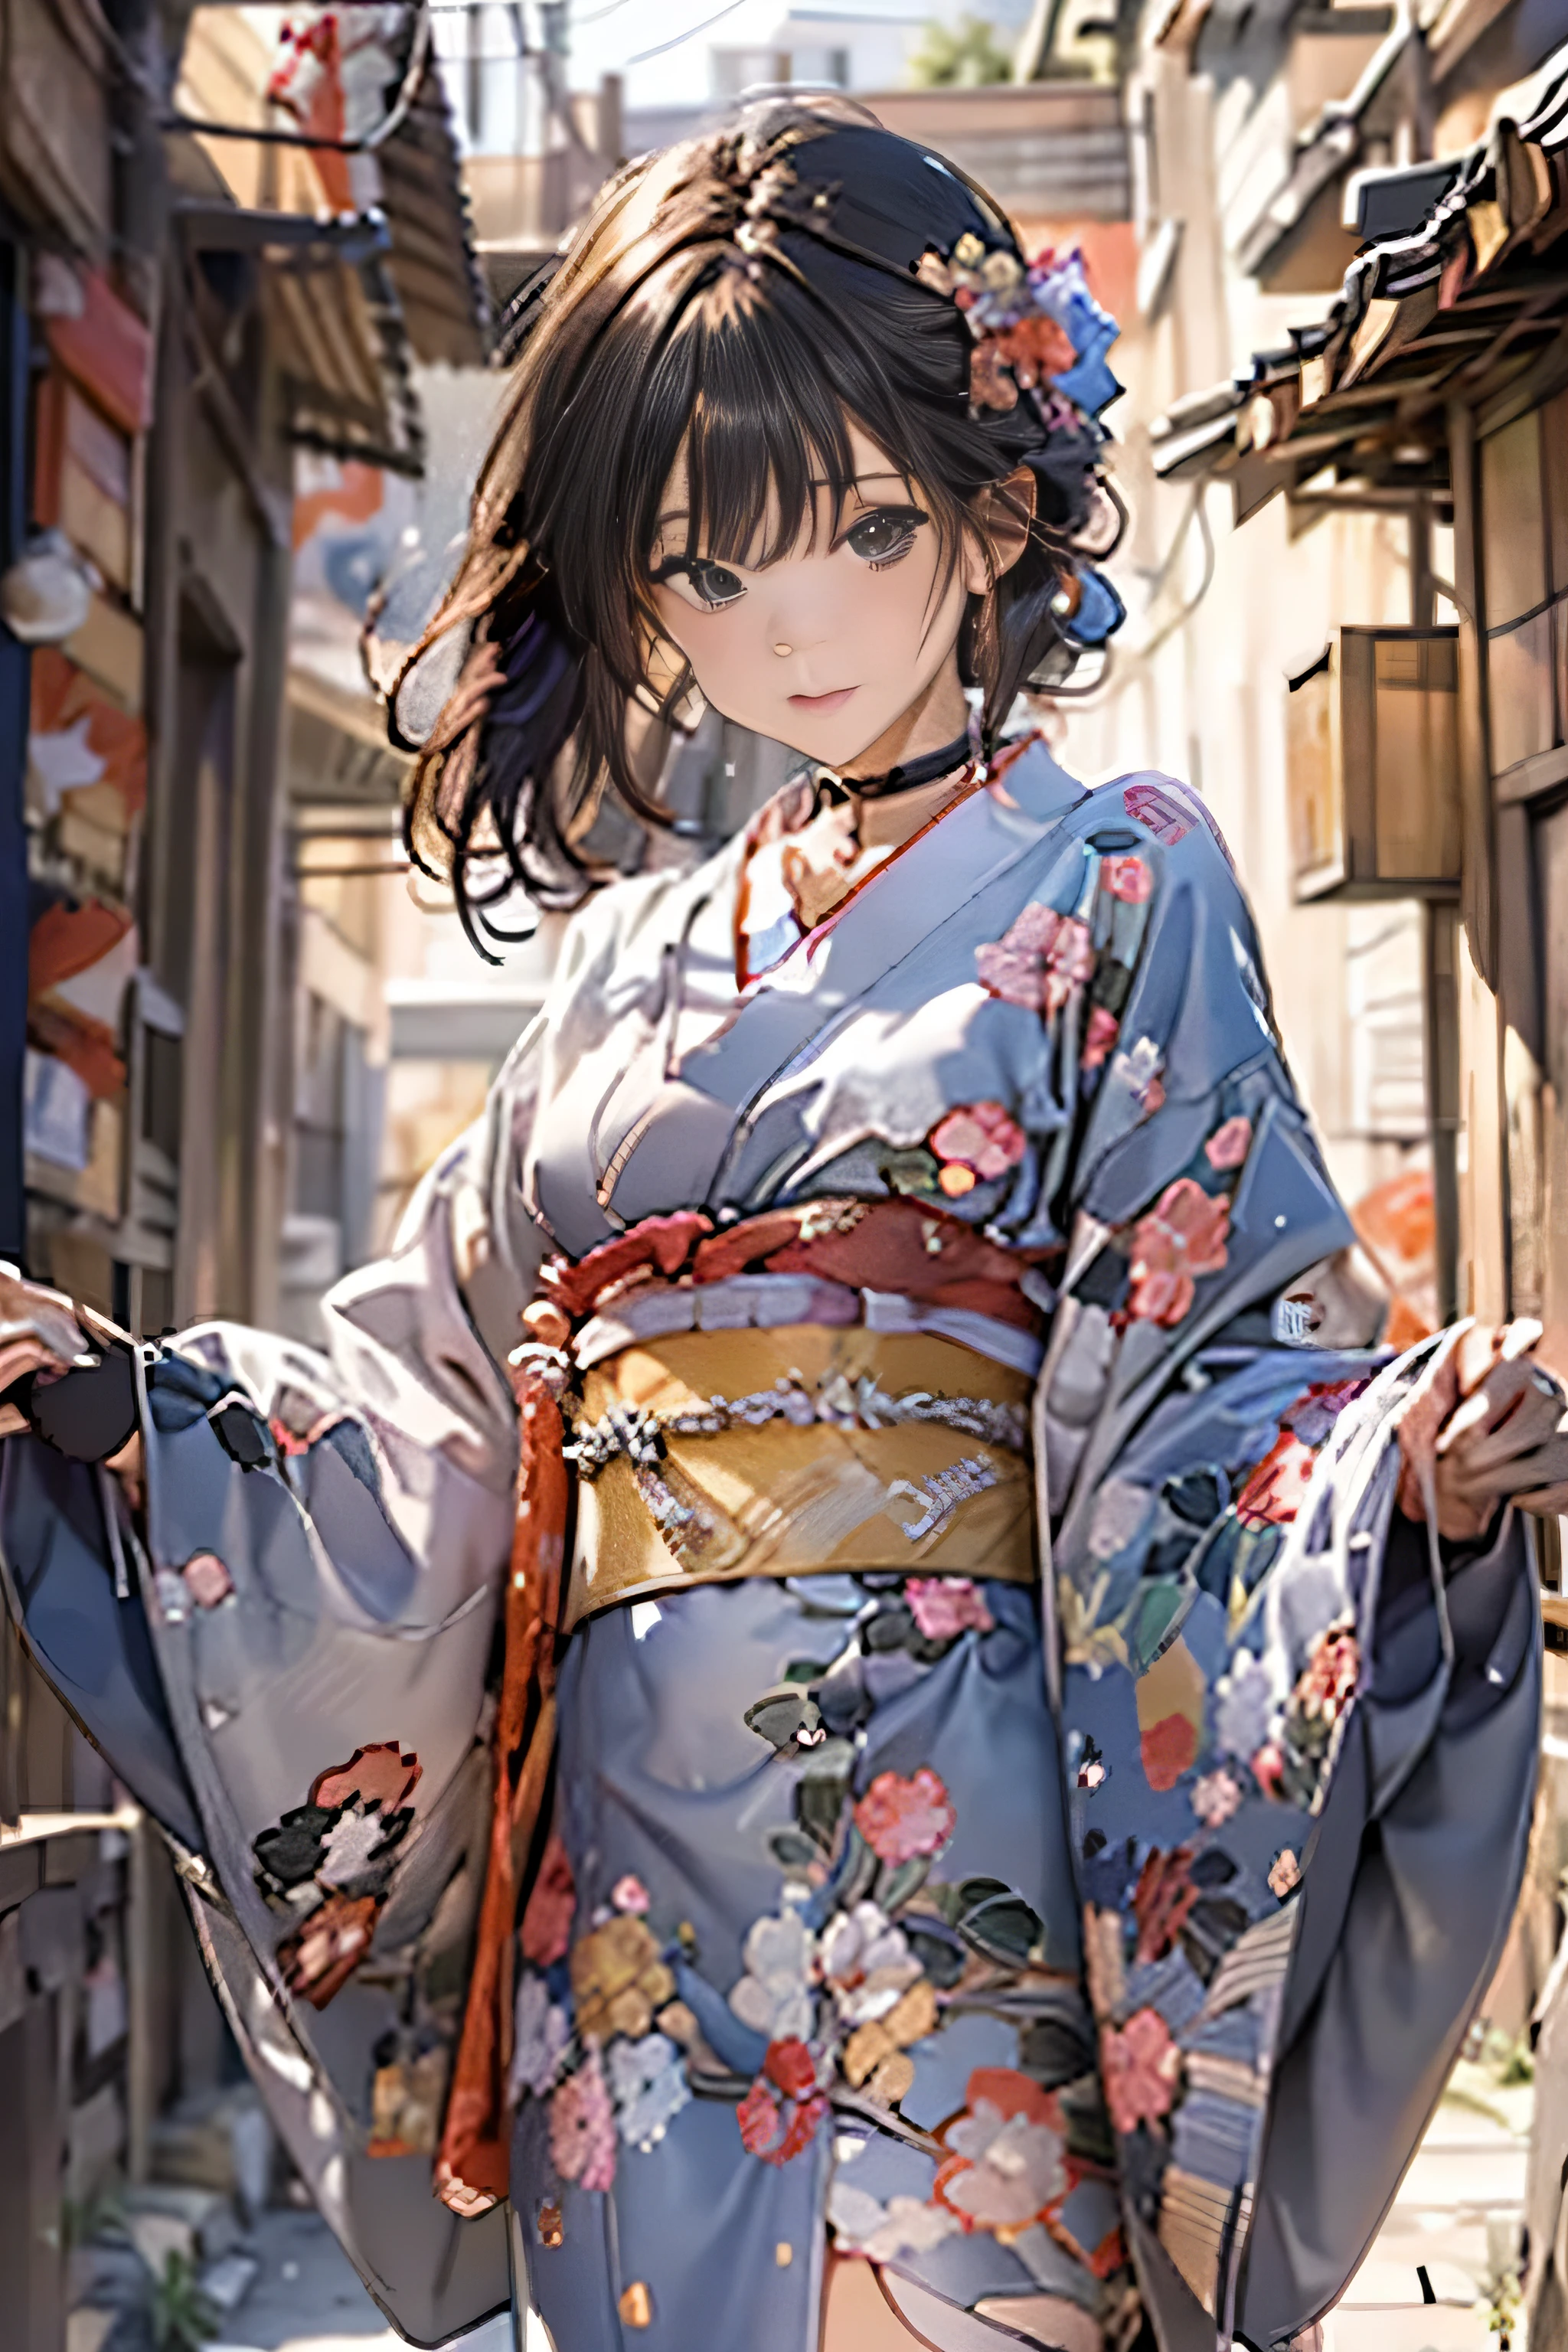 (de primera calidad,Calidad de imagen 8K,​obra maestra:1.3,alta resolución,Mesa:1.2, Realism:1.3), Mujer de 23 años con kimono.,vista frontal:0.8,Esbian de cuerpo completo:1.3,mirando a la camara,(vestido japonés, Kimono:1.4,Komono:1.2, una gargantilla:1.4),(Cabello corto:1.2,cabello negro bien arreglado), (callejon:1.3), Se quita el kimono,muslo visible,puedo ver bragas,tetinas transparentes, hermoso rostro,(Jóvenes ídolos de huecograbado, Ídolo de huecograbado flaco joven, ídolo de huecograbado sofisticado),(rostro impecable y detallado),manos normales:1.5,Dedo normal:1:5,piernas normales:1.5